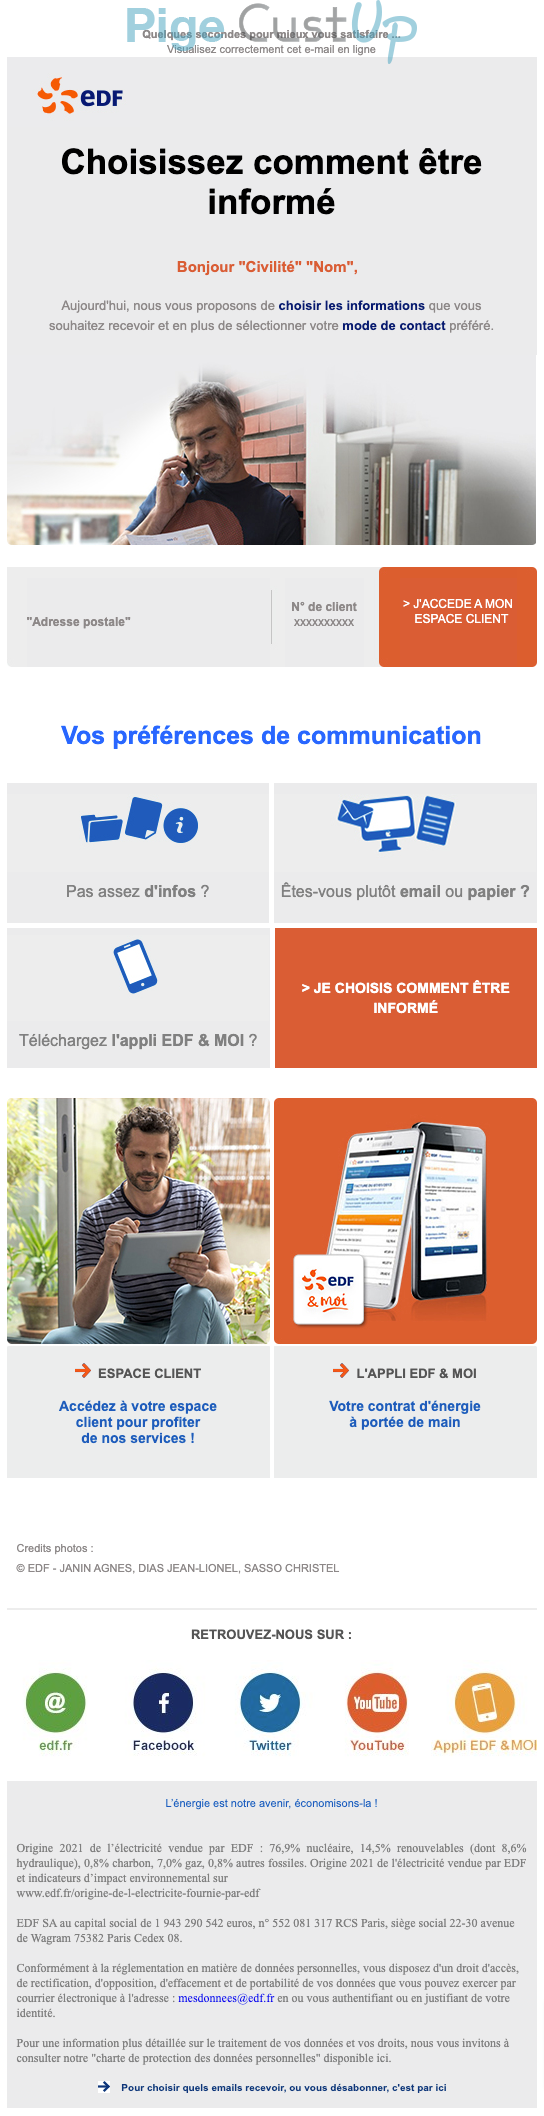 Exemple de Type de media  e-mailing - EDF - Service Clients - Préférences de communication